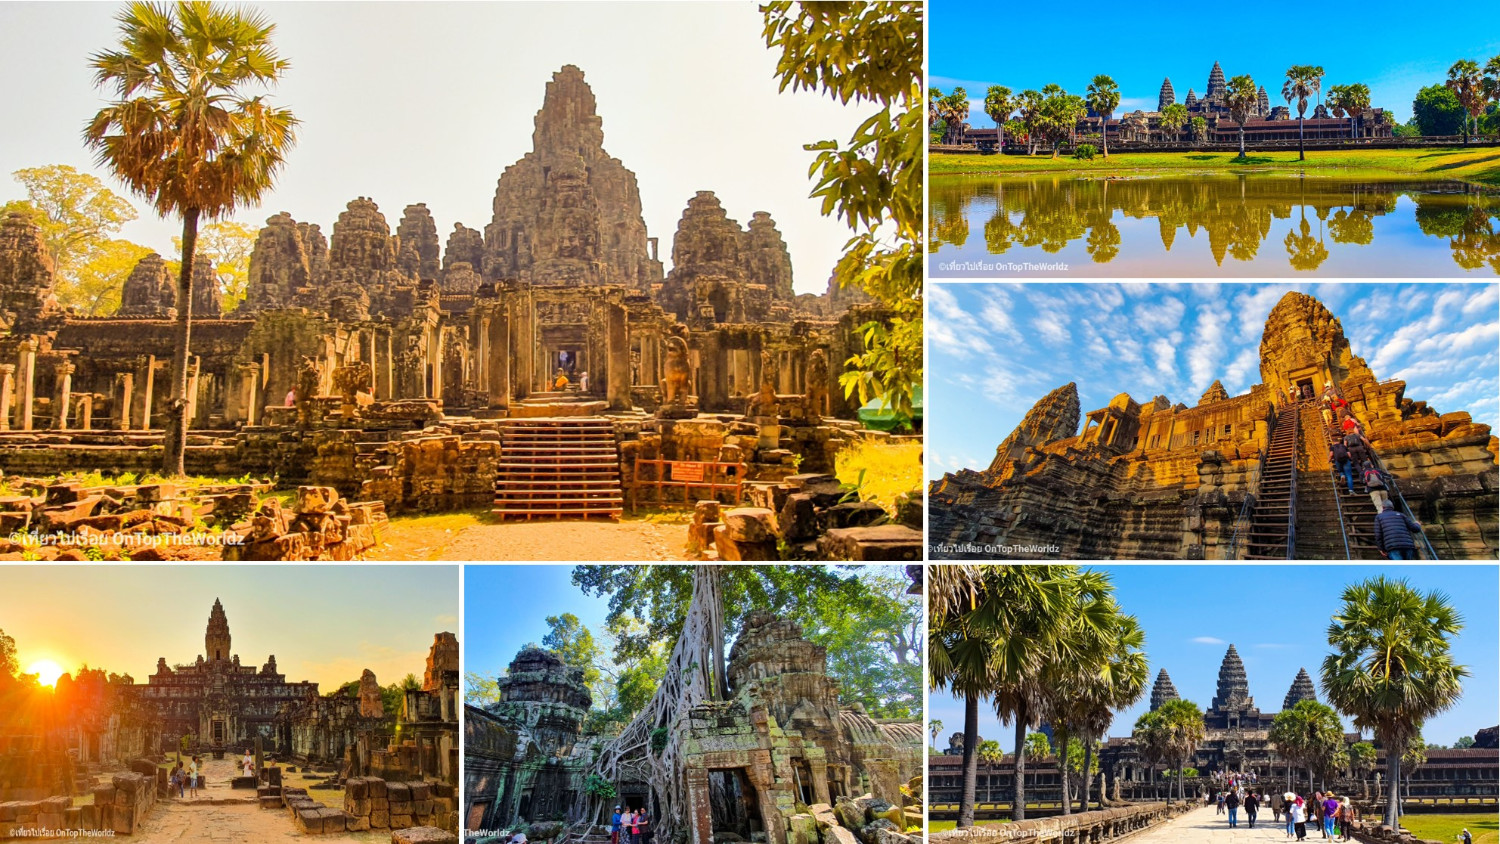 คู่มือเที่ยว เสียมราฐ (Siem Reap) มหัศจรรย์เมืองมรดกโลก นครวัด นครธม  ด้วยตัวเอง - Pantip